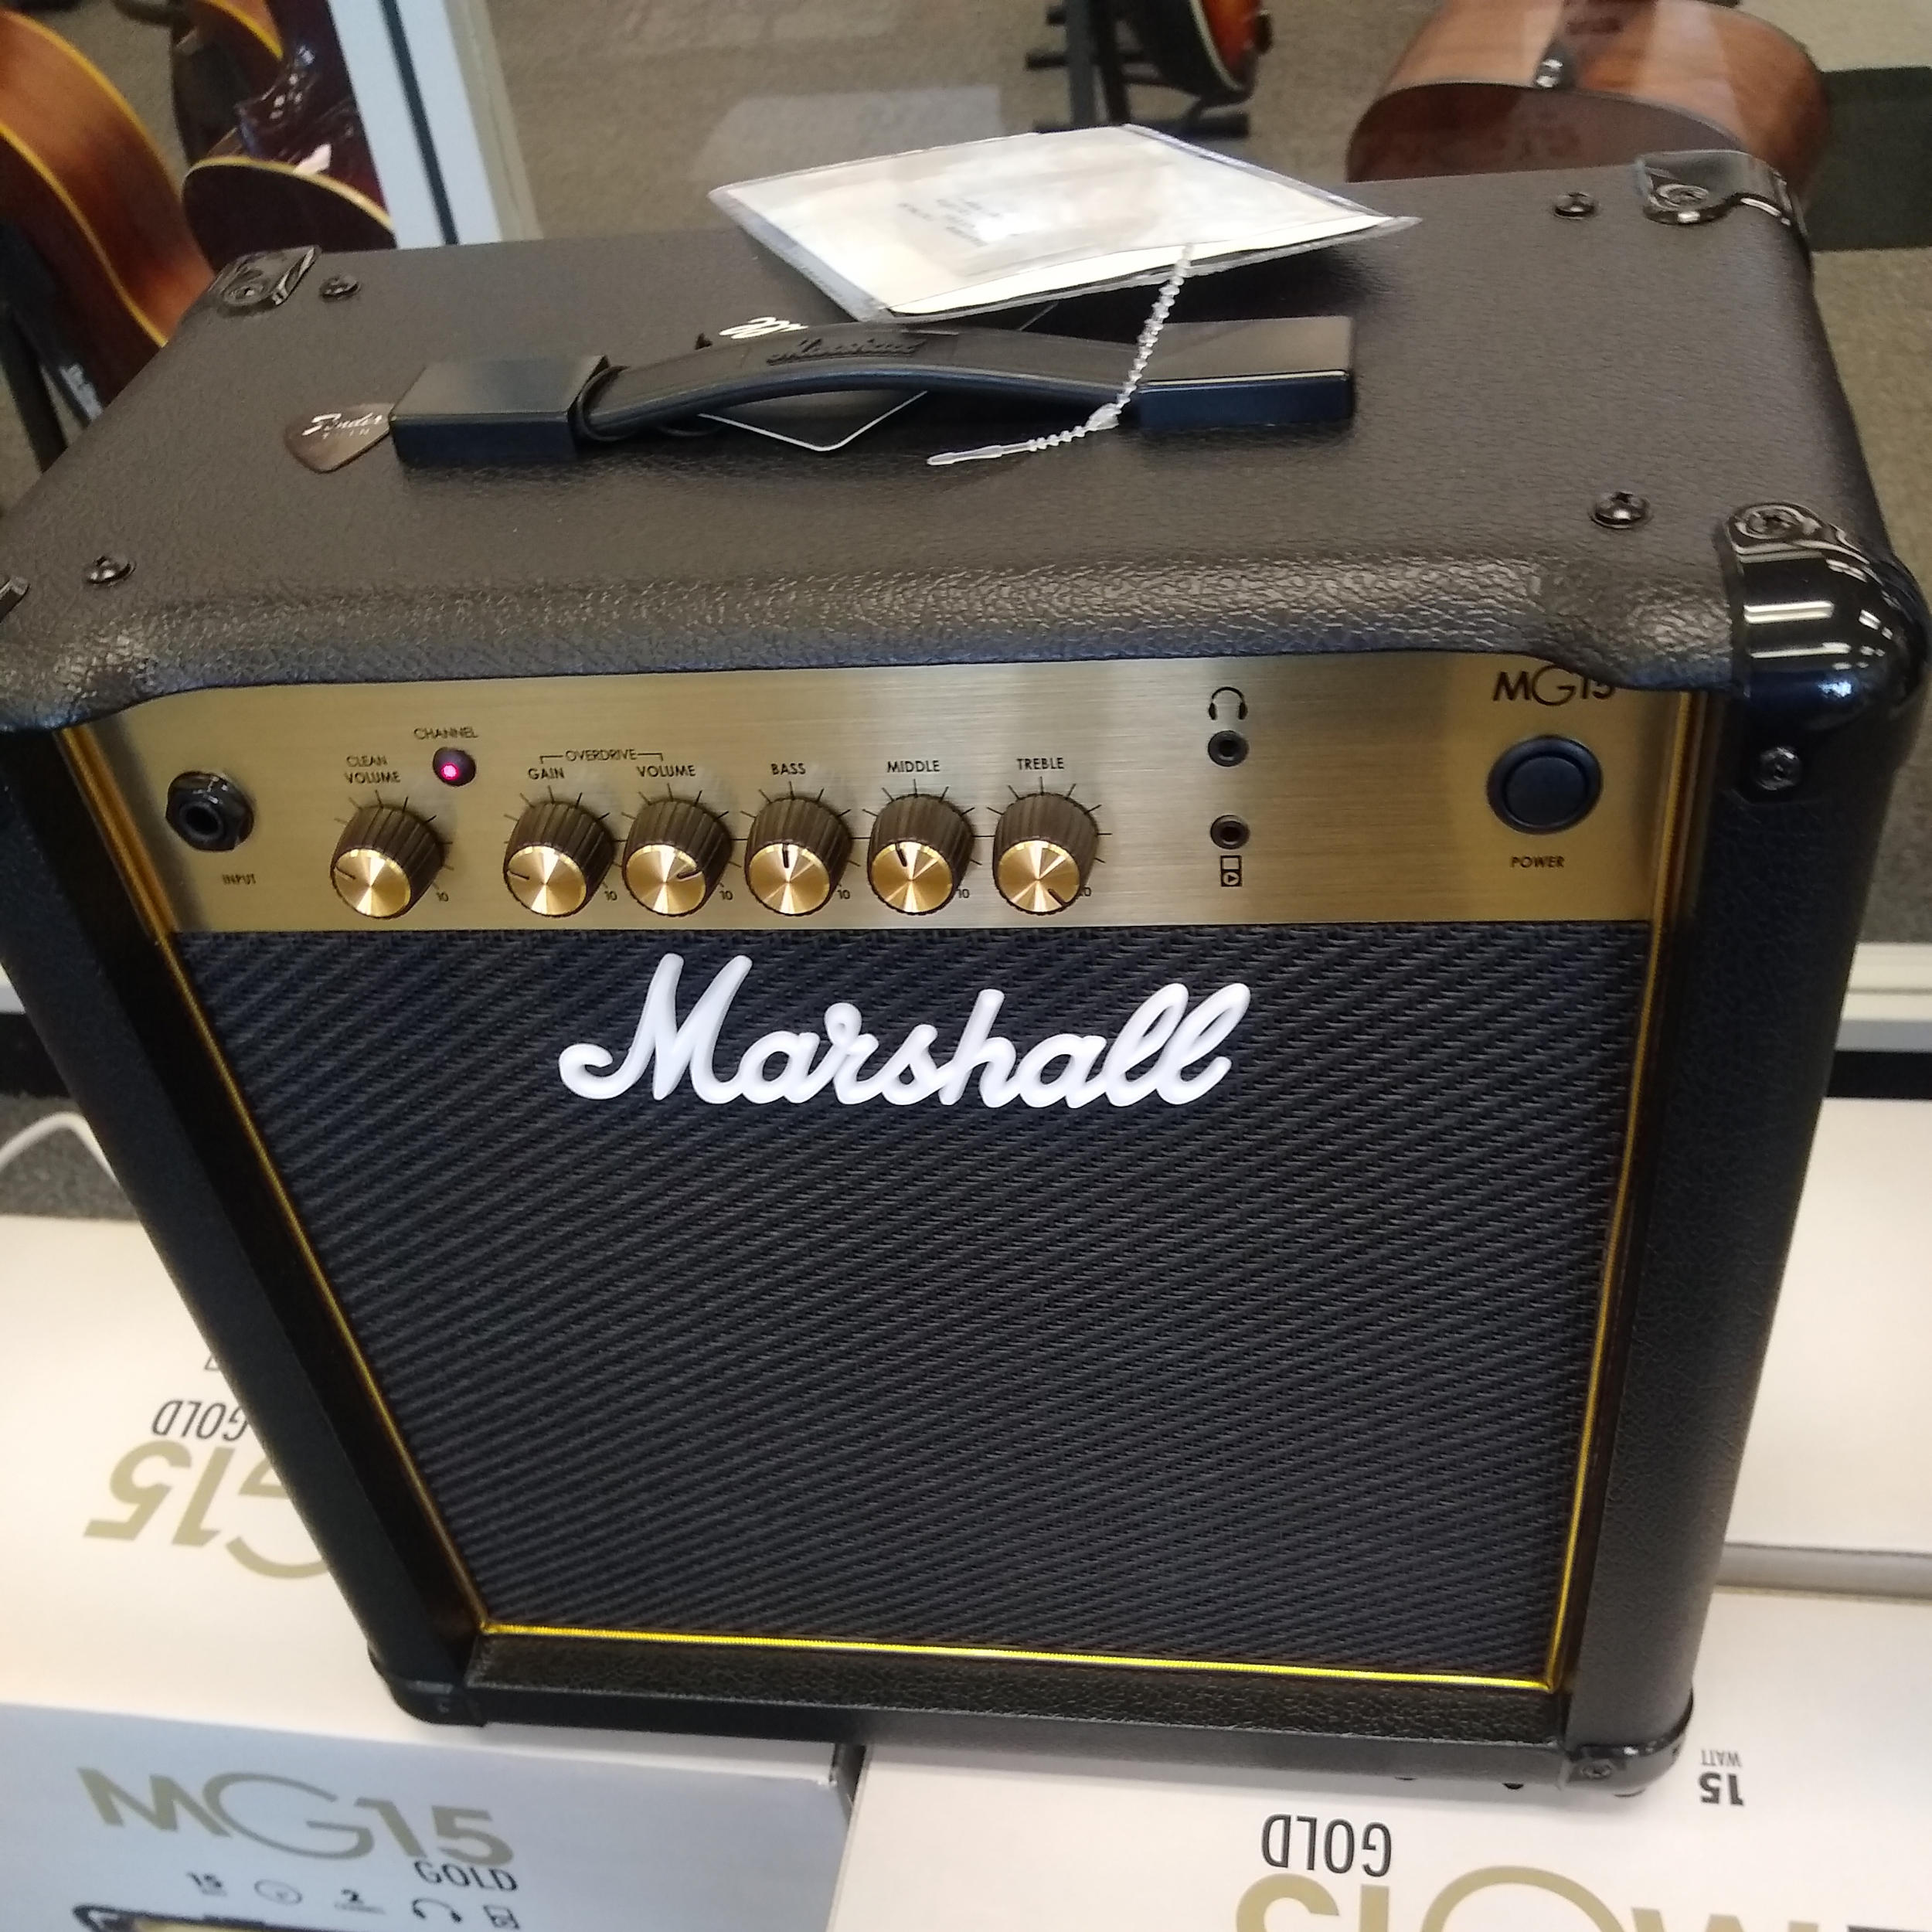 Marshall 15G Amplifier